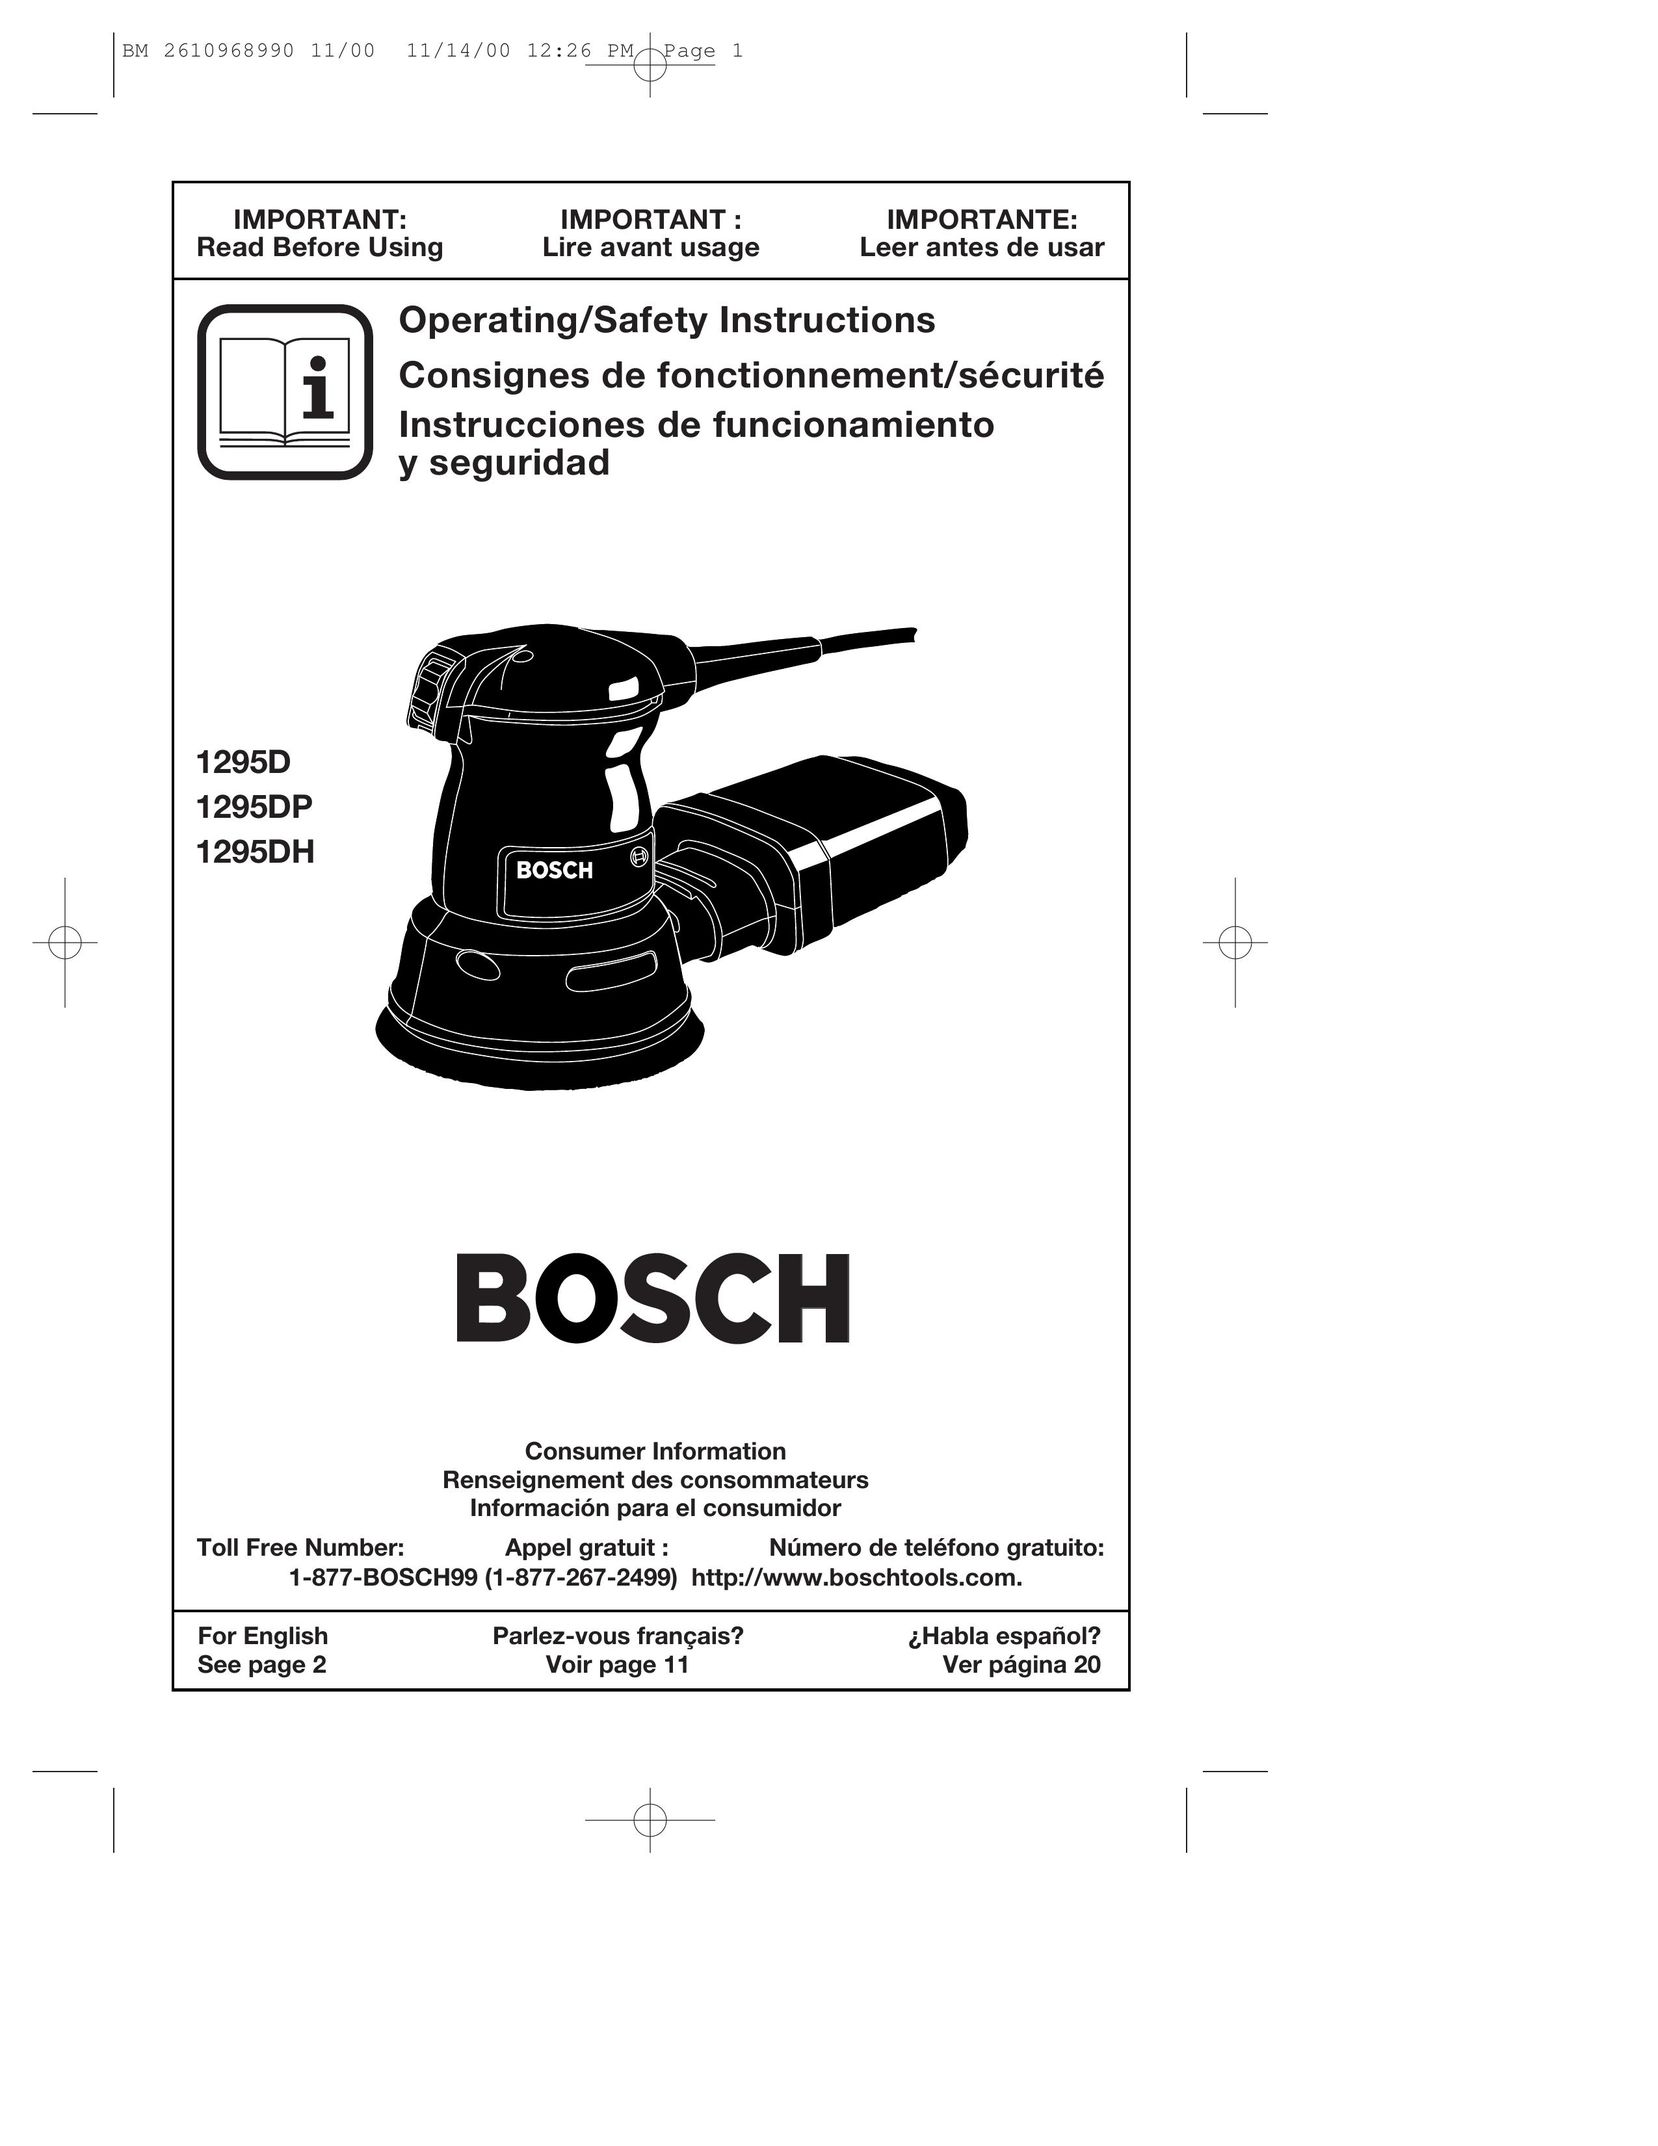 Bosch Power Tools 1295D Sander User Manual